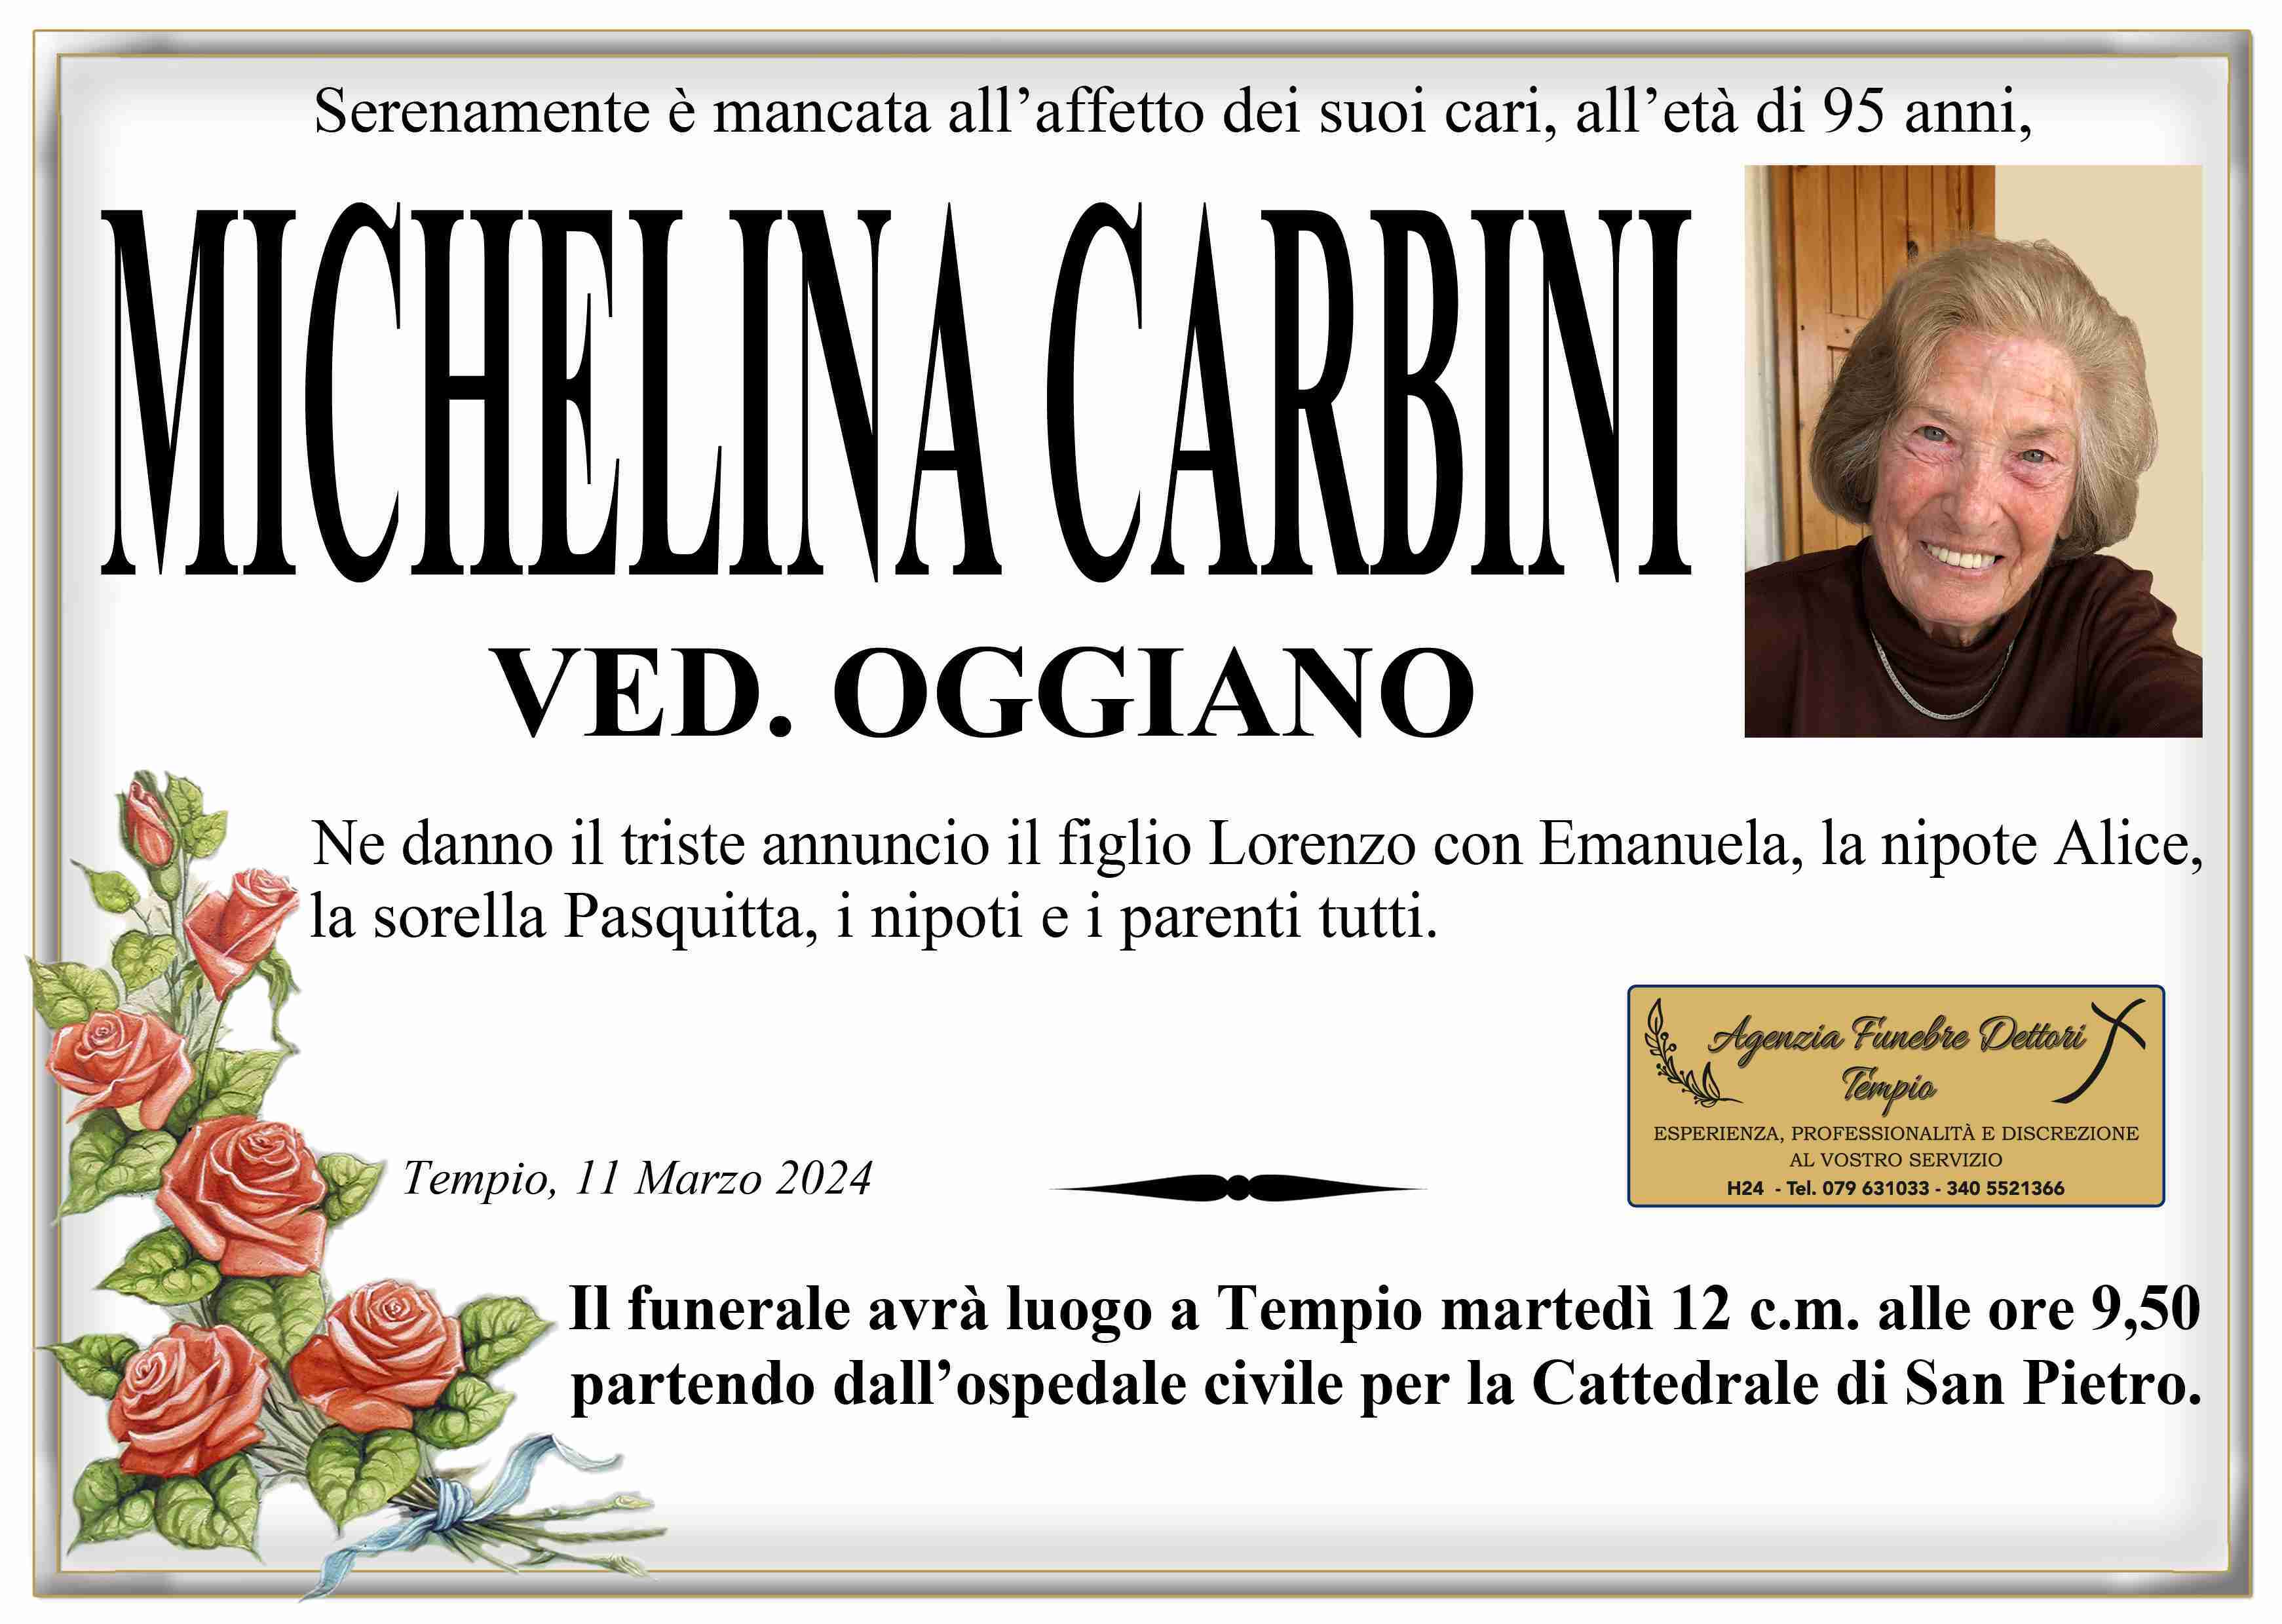 Michelina Carbini